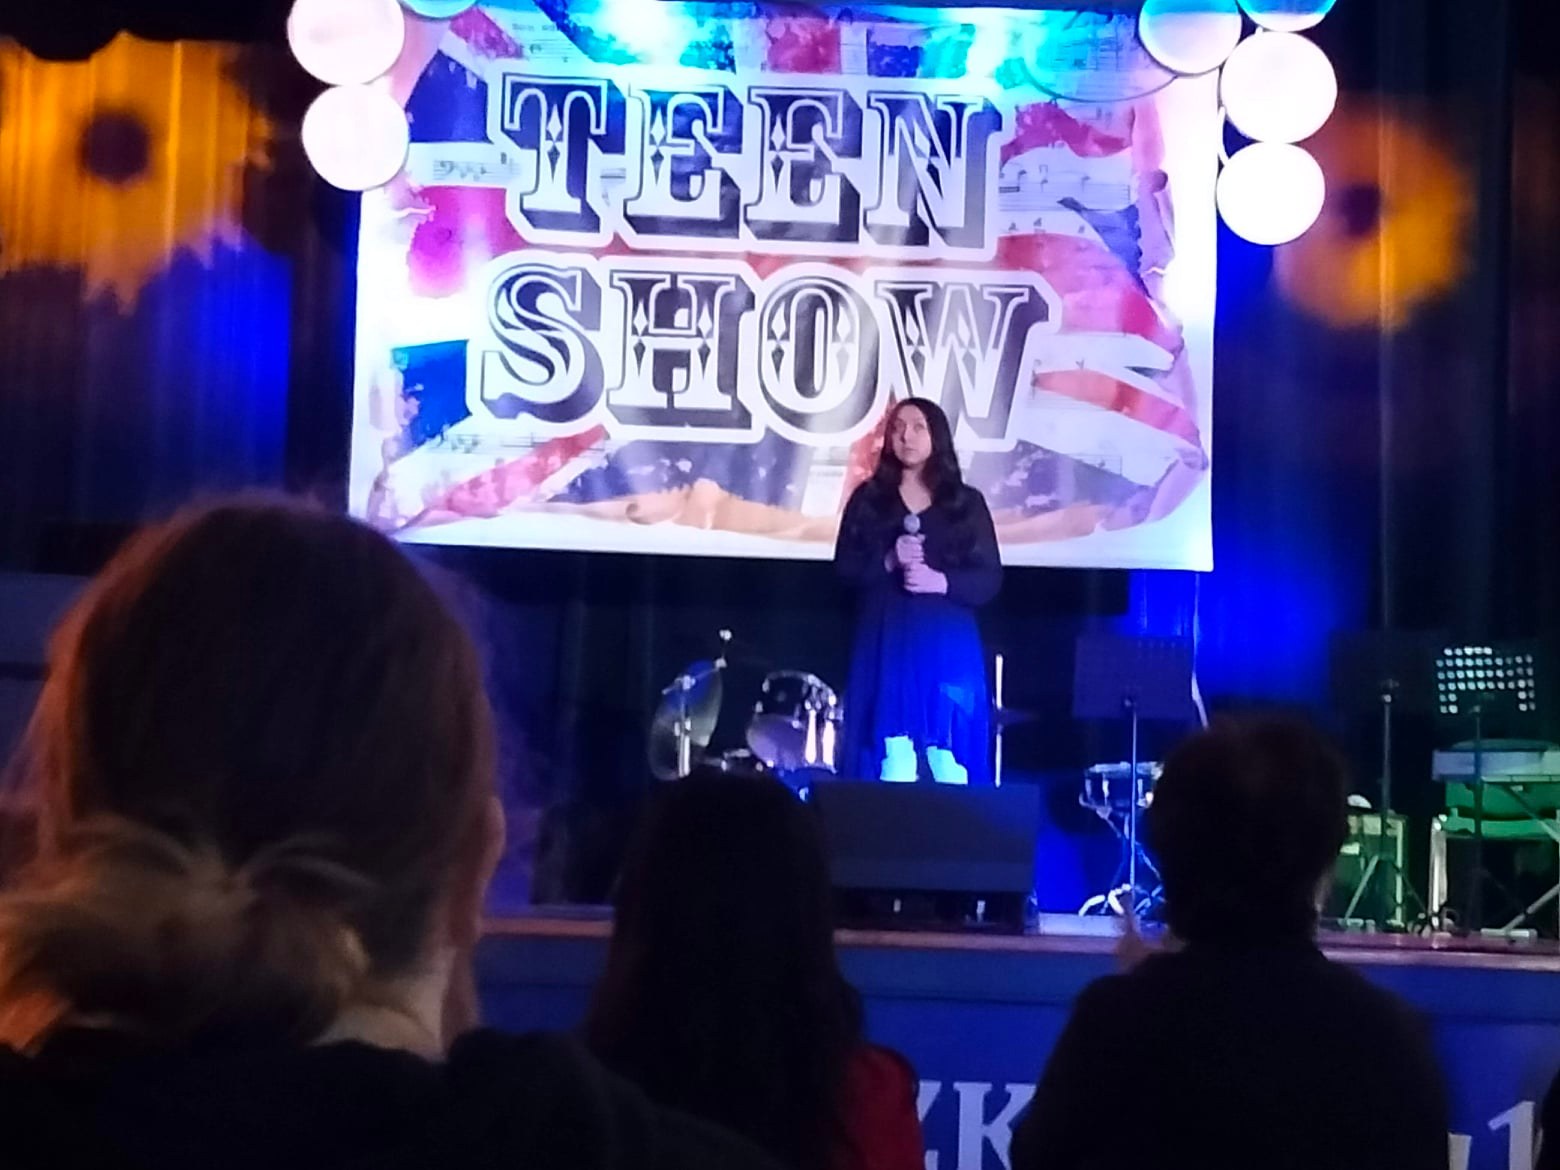 Podkarpackim Konkursie Piosenki i Wiersza Obcojęzycznego Teen Show